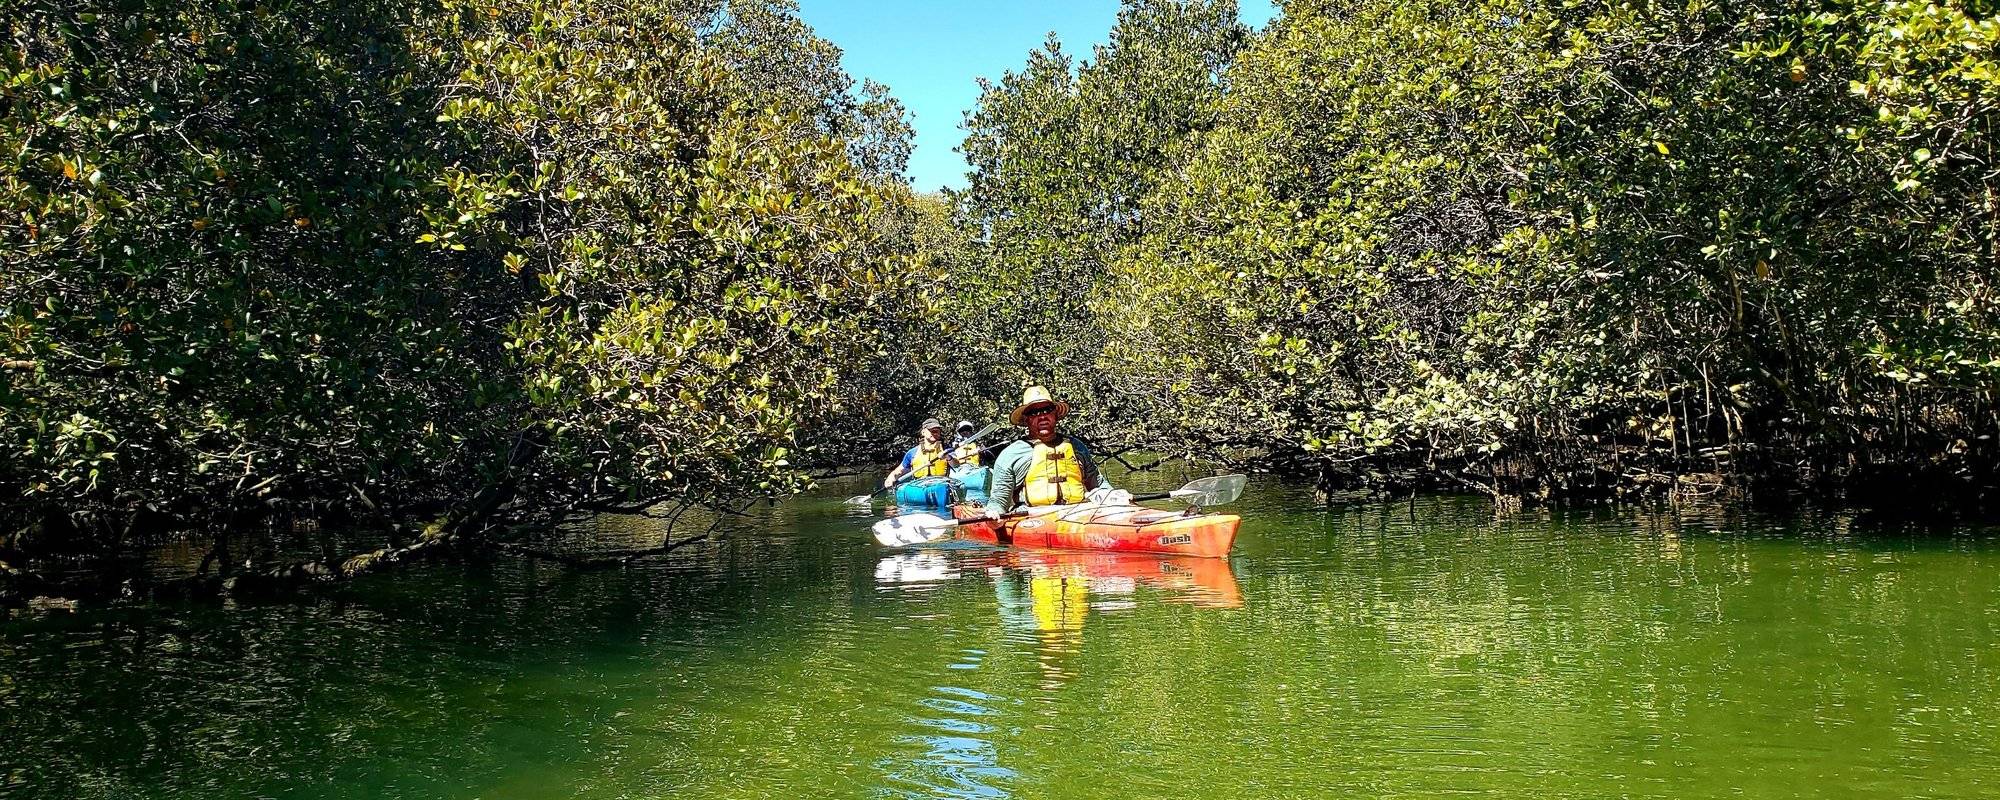 Kayaking in the mangroves - Garden Island, Port Adelaide